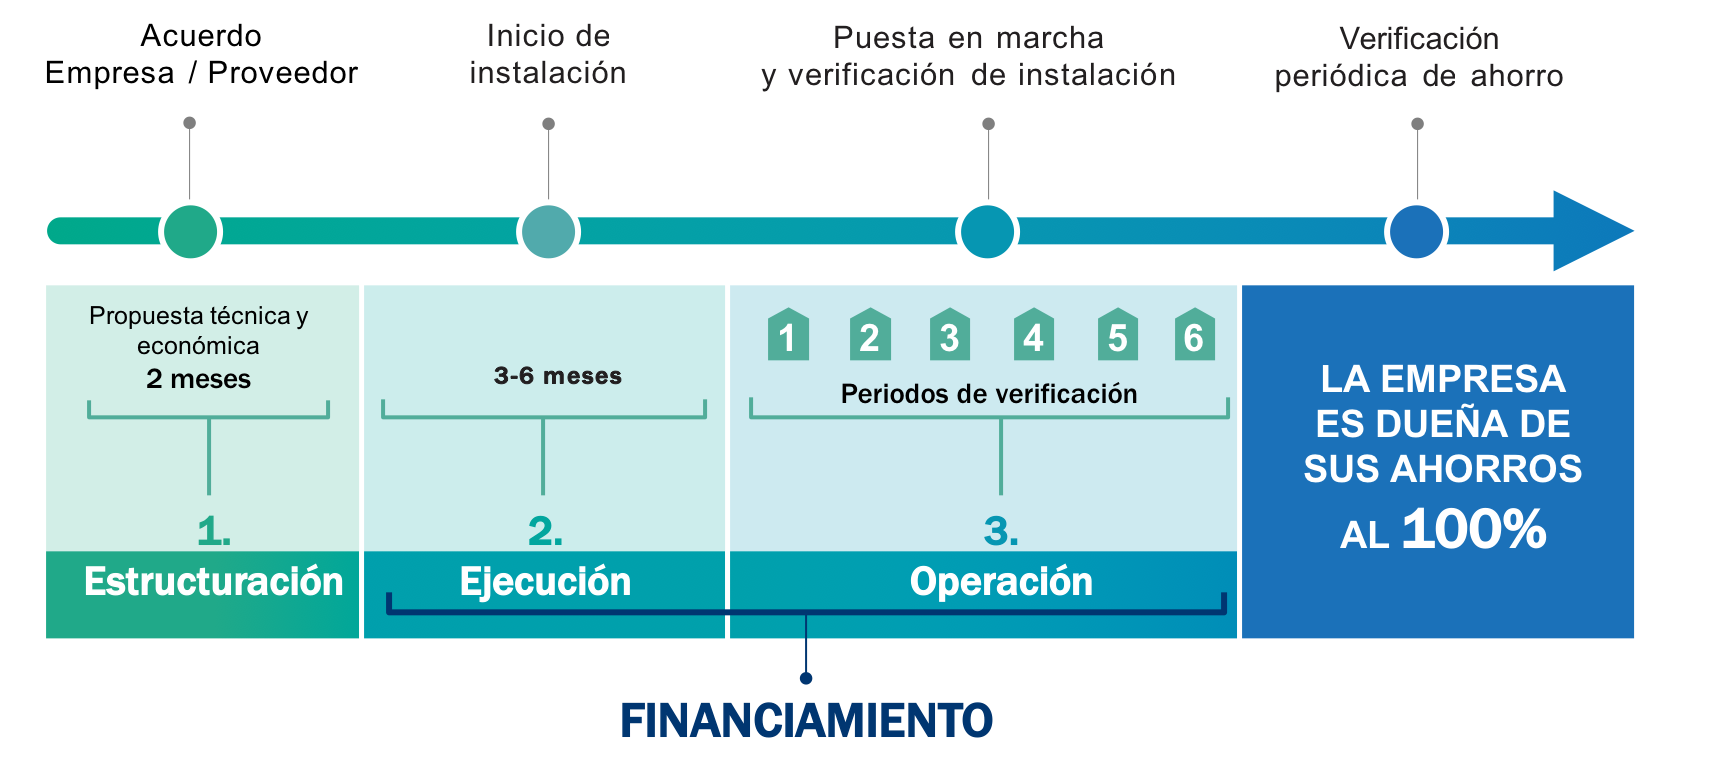 Las fases del proyecto se dividen en 4: estructuración, ejecución, operación y verificación del ahorro. El financiamiento de FIRA es clave en la segunda y tercera etapa